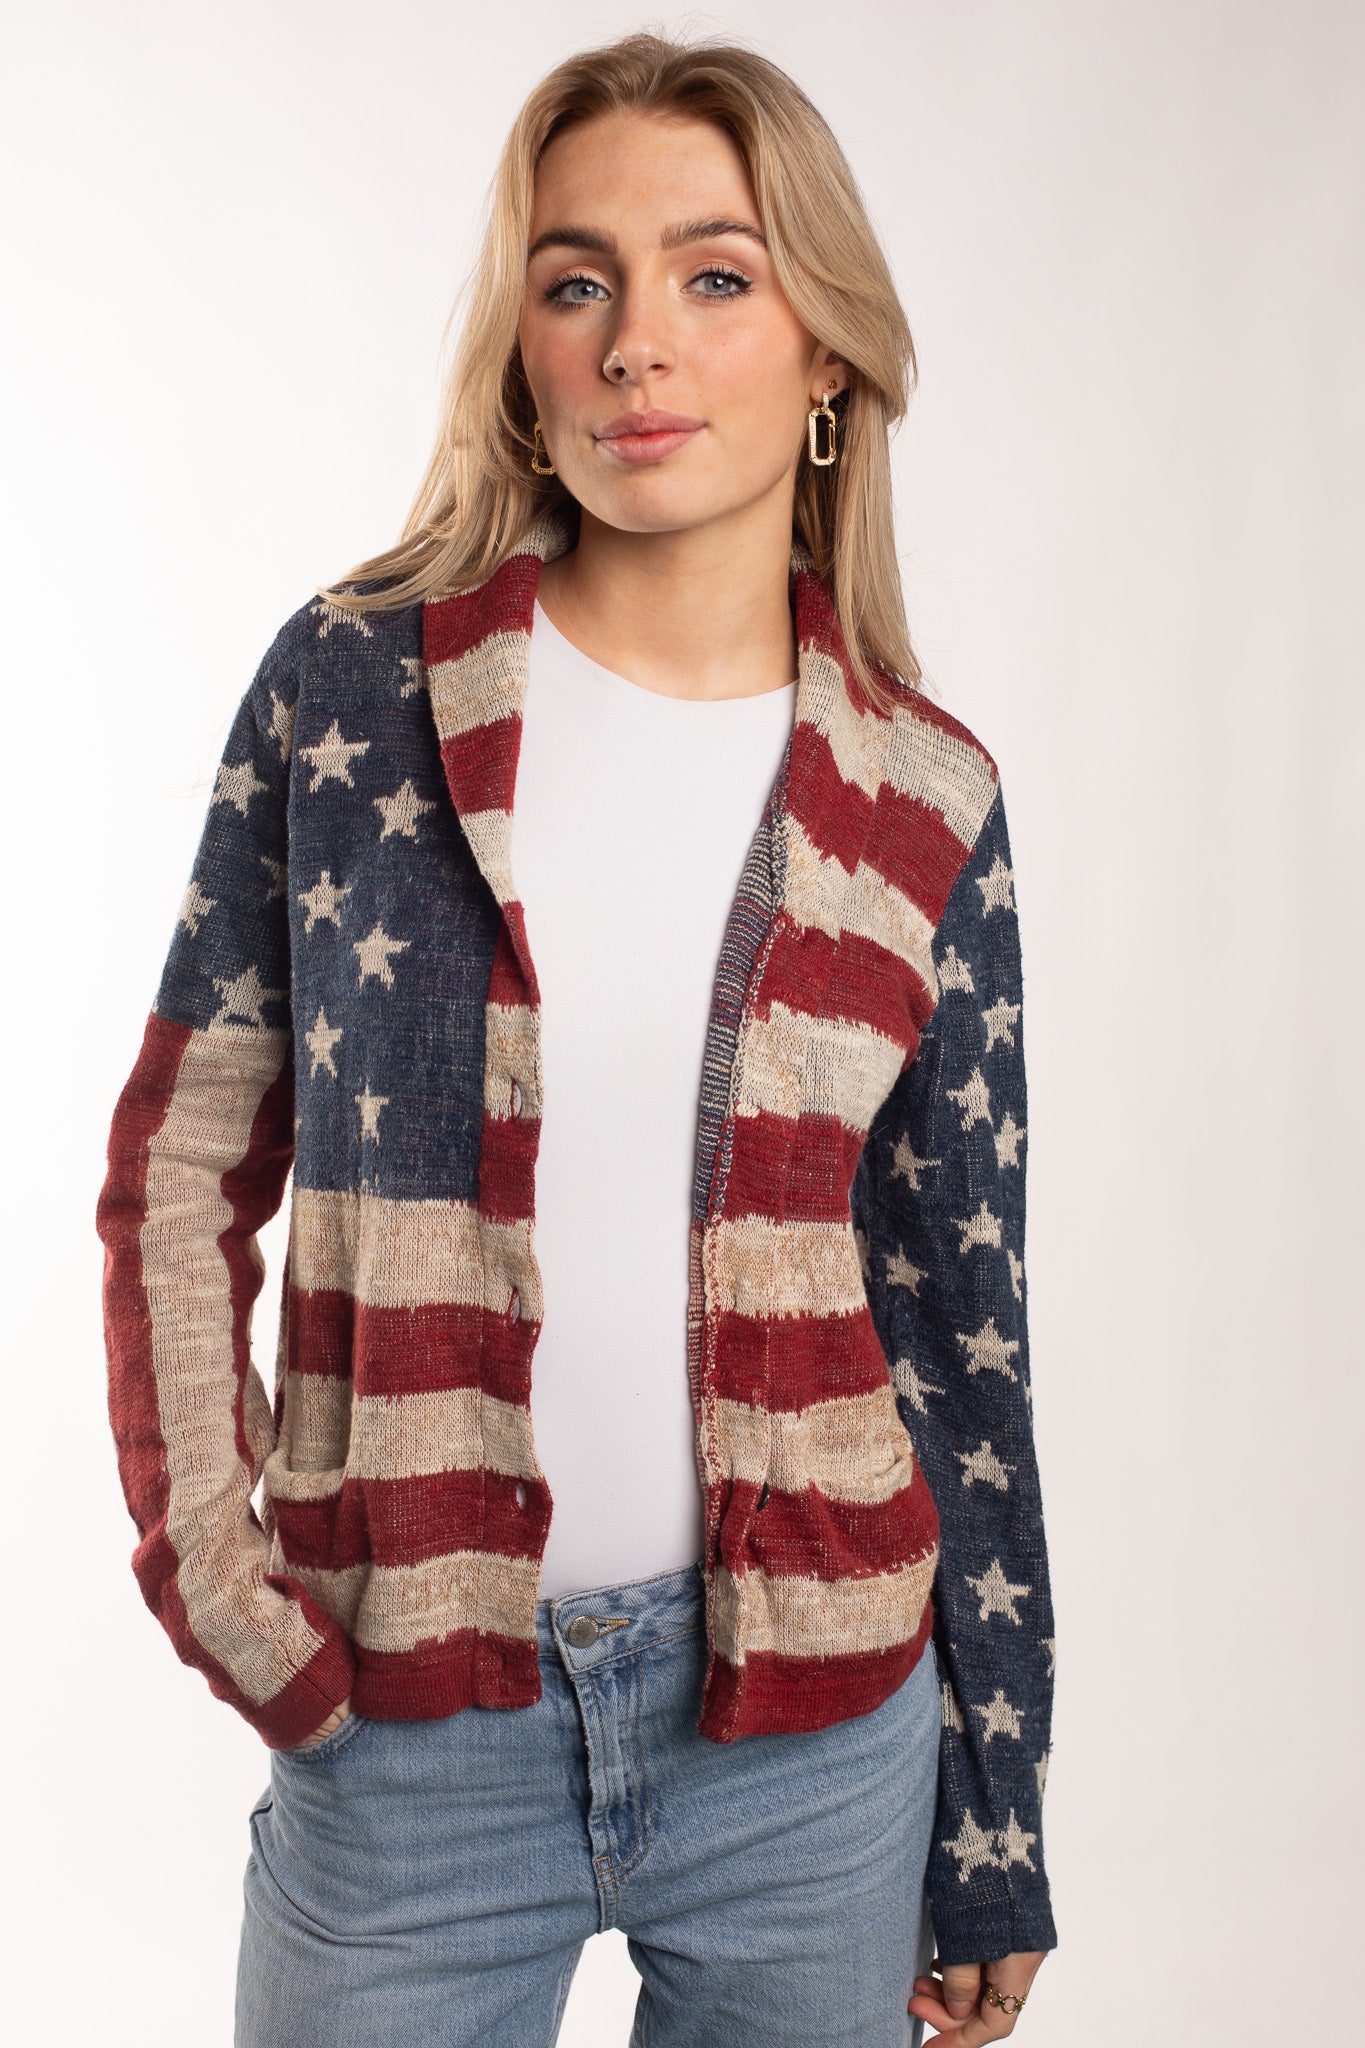 USA Flag - Full Zip (S)